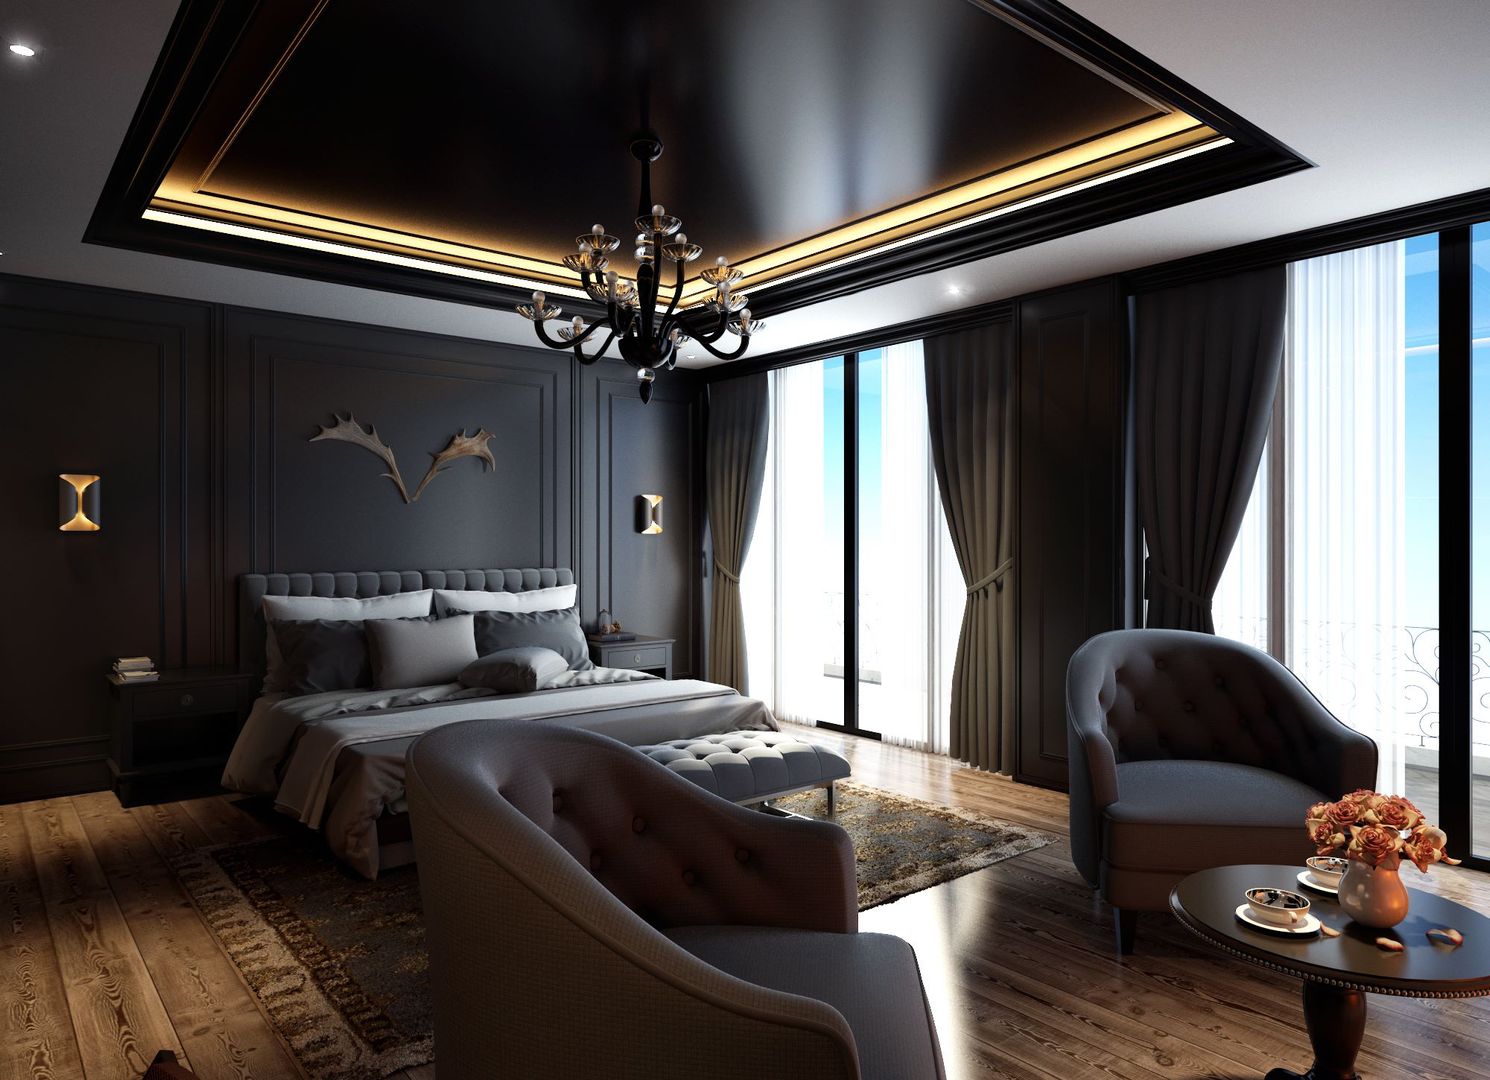 Avangard Yatak Odası, Cg Artist ibrahim ethem kısacık Cg Artist ibrahim ethem kısacık Rustic style bedroom Accessories & decoration